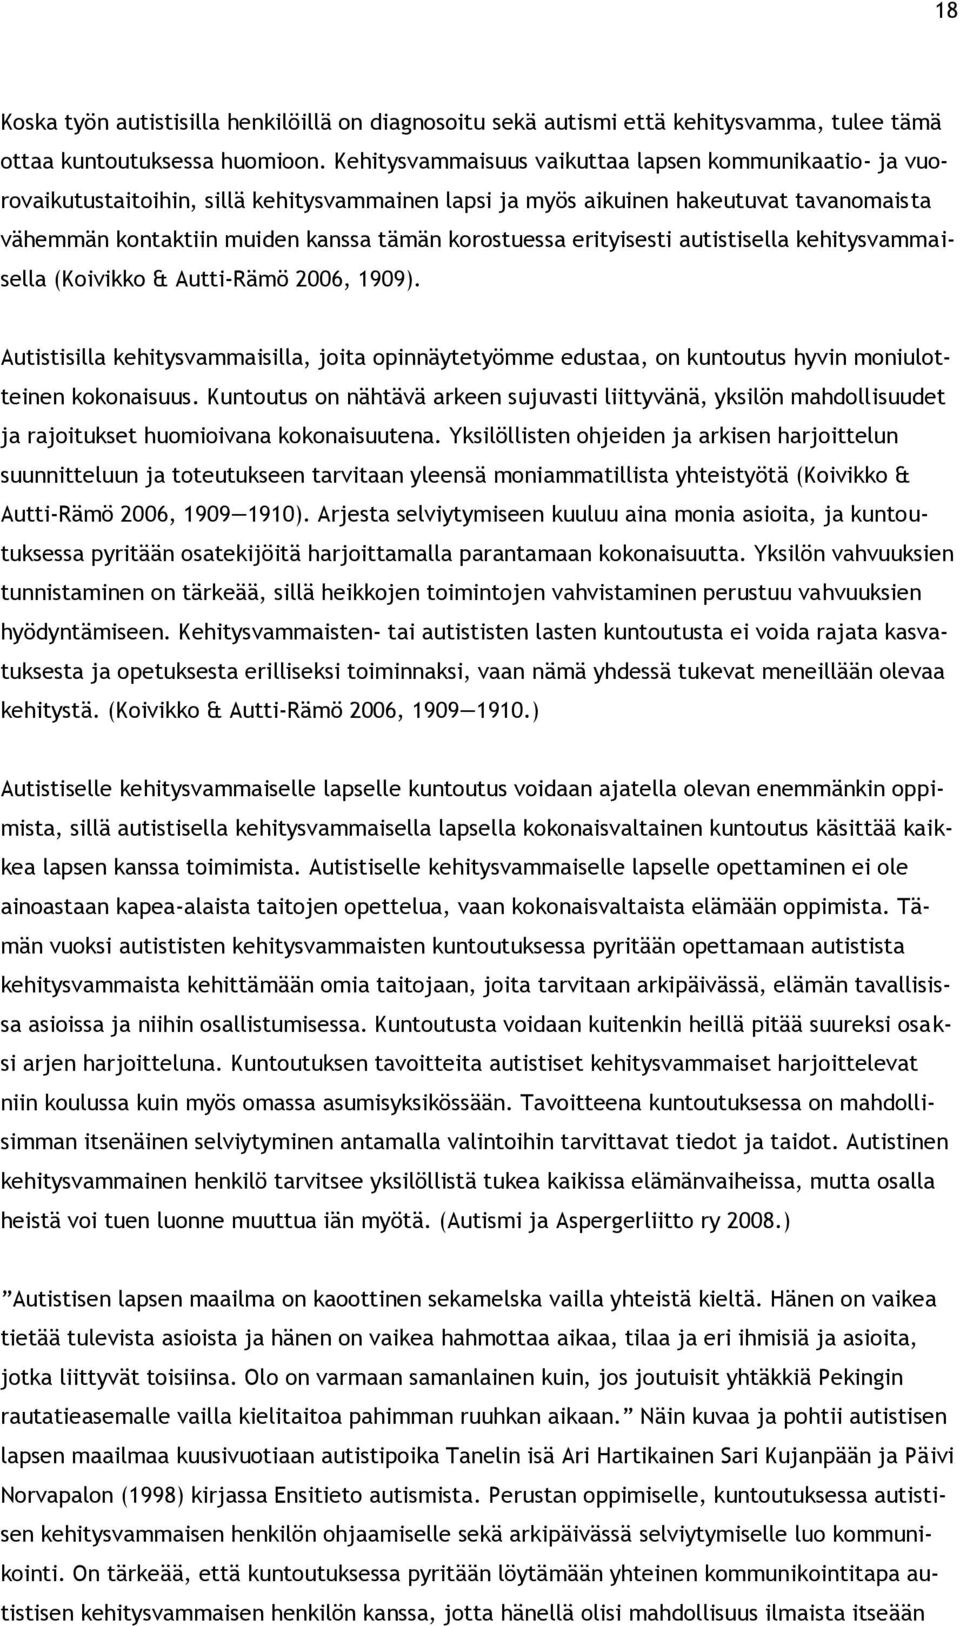 erityisesti autistisella kehitysvammaisella (Koivikko & Autti-Rämö 2006, 1909). Autistisilla kehitysvammaisilla, joita opinnäytetyömme edustaa, on kuntoutus hyvin moniulotteinen kokonaisuus.